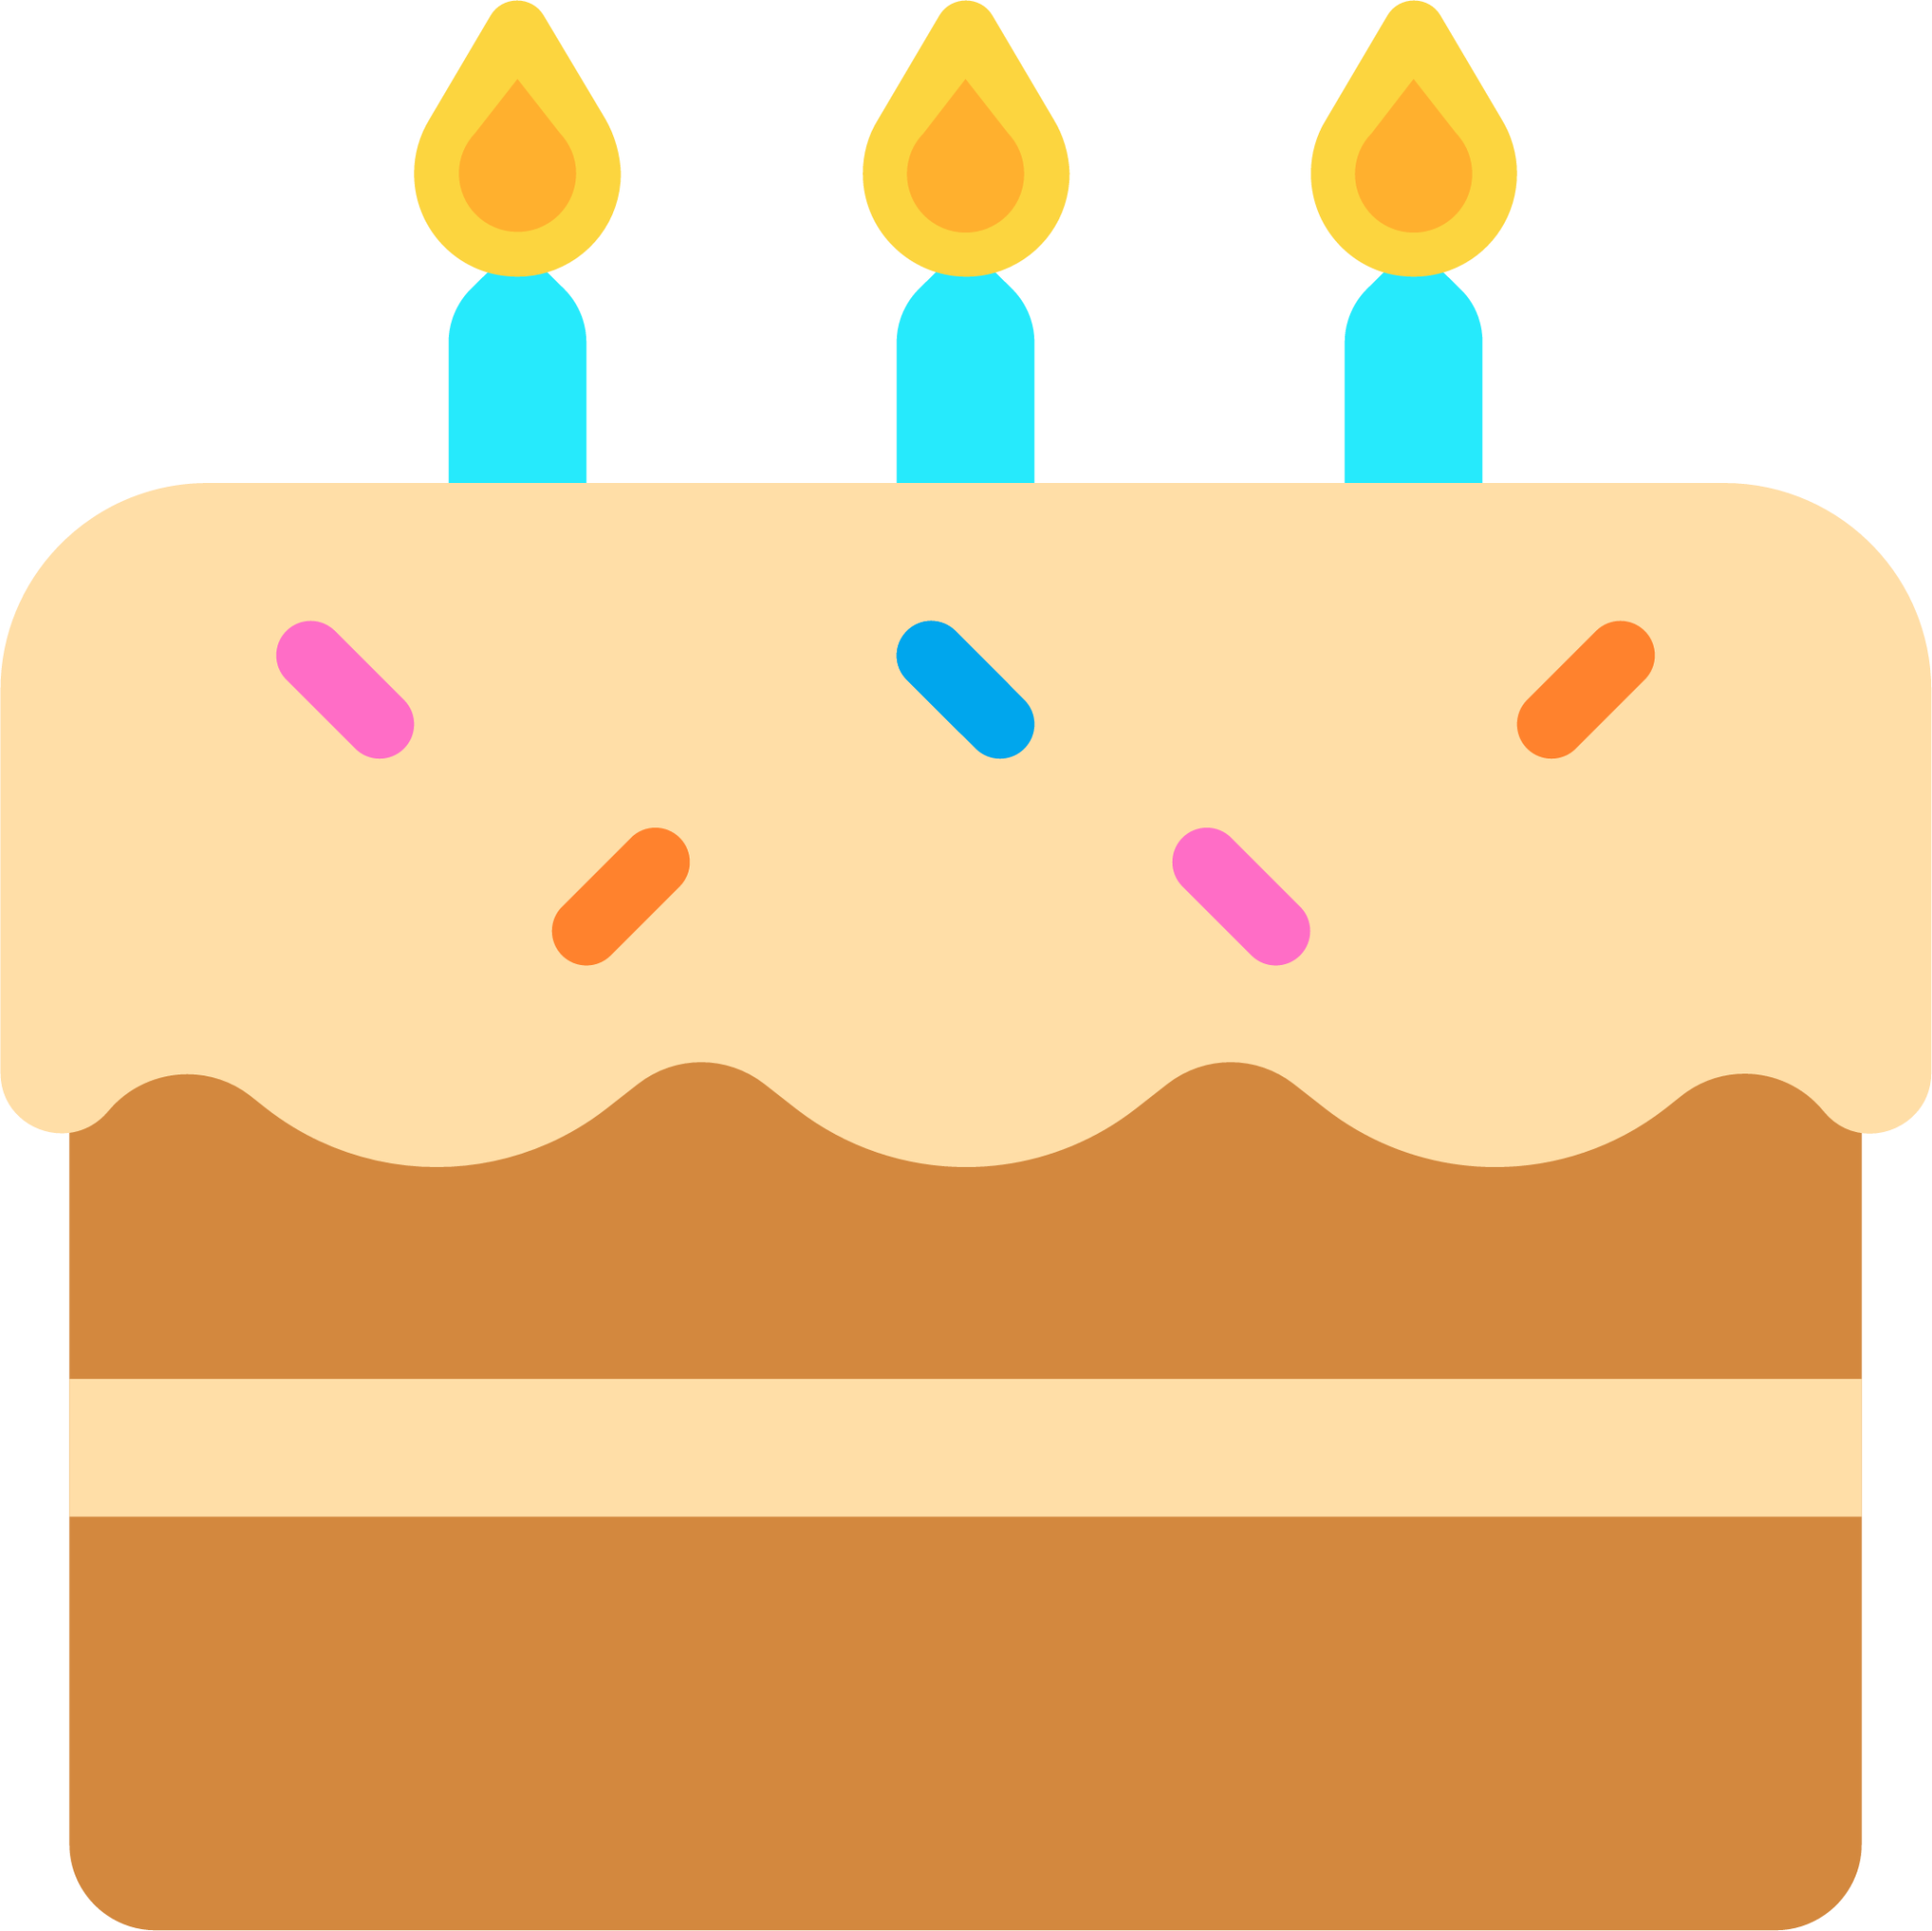 Birthday Cake Emoji Images - Free Download on Freepik